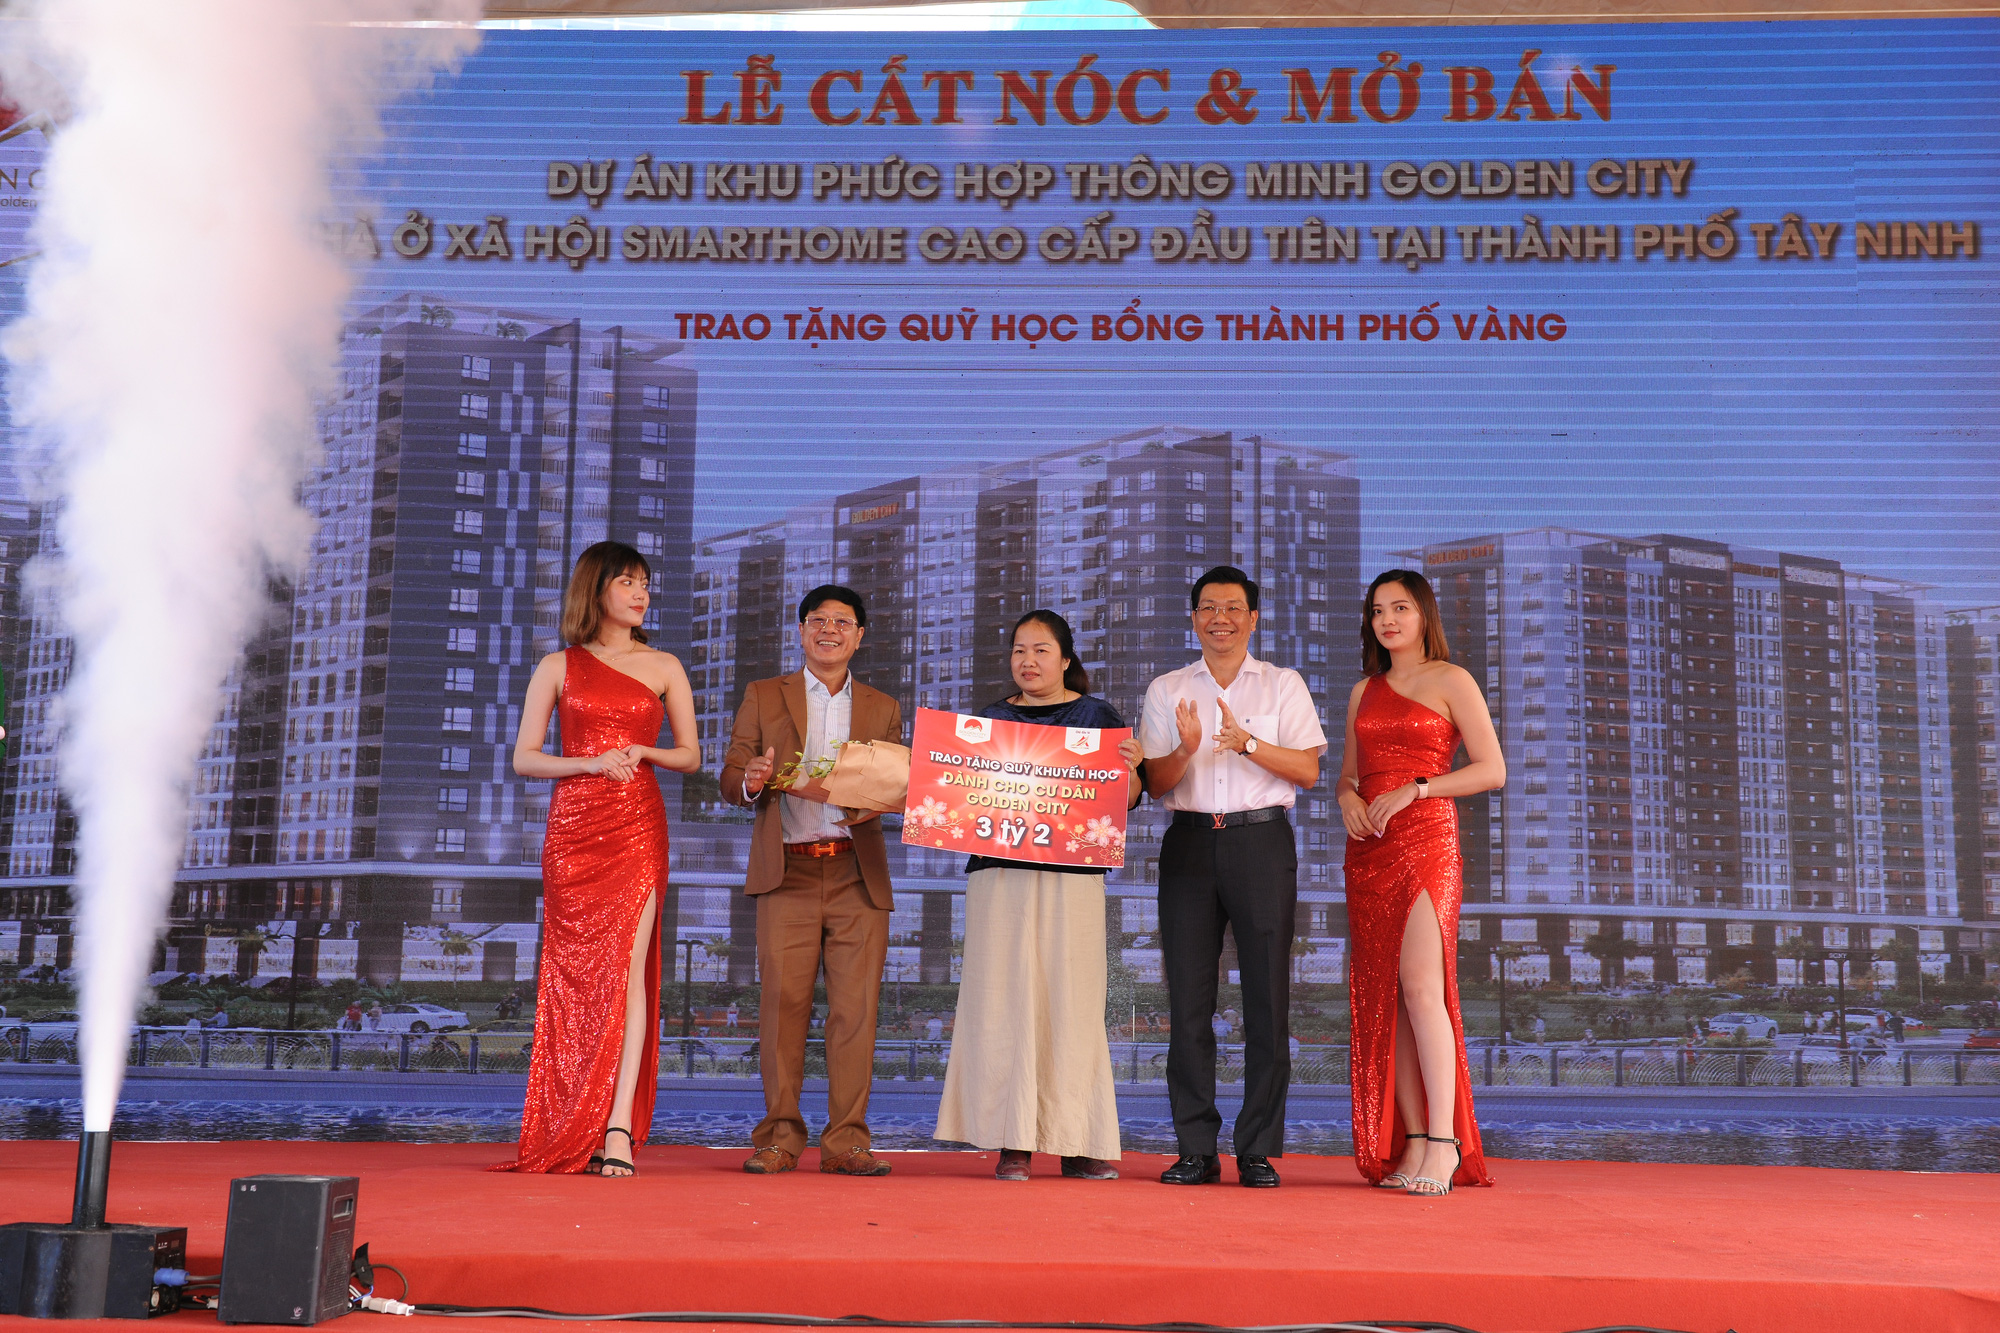 Chính thức cất nóc và mở bán smarthome cao cấp tại Tây Ninh